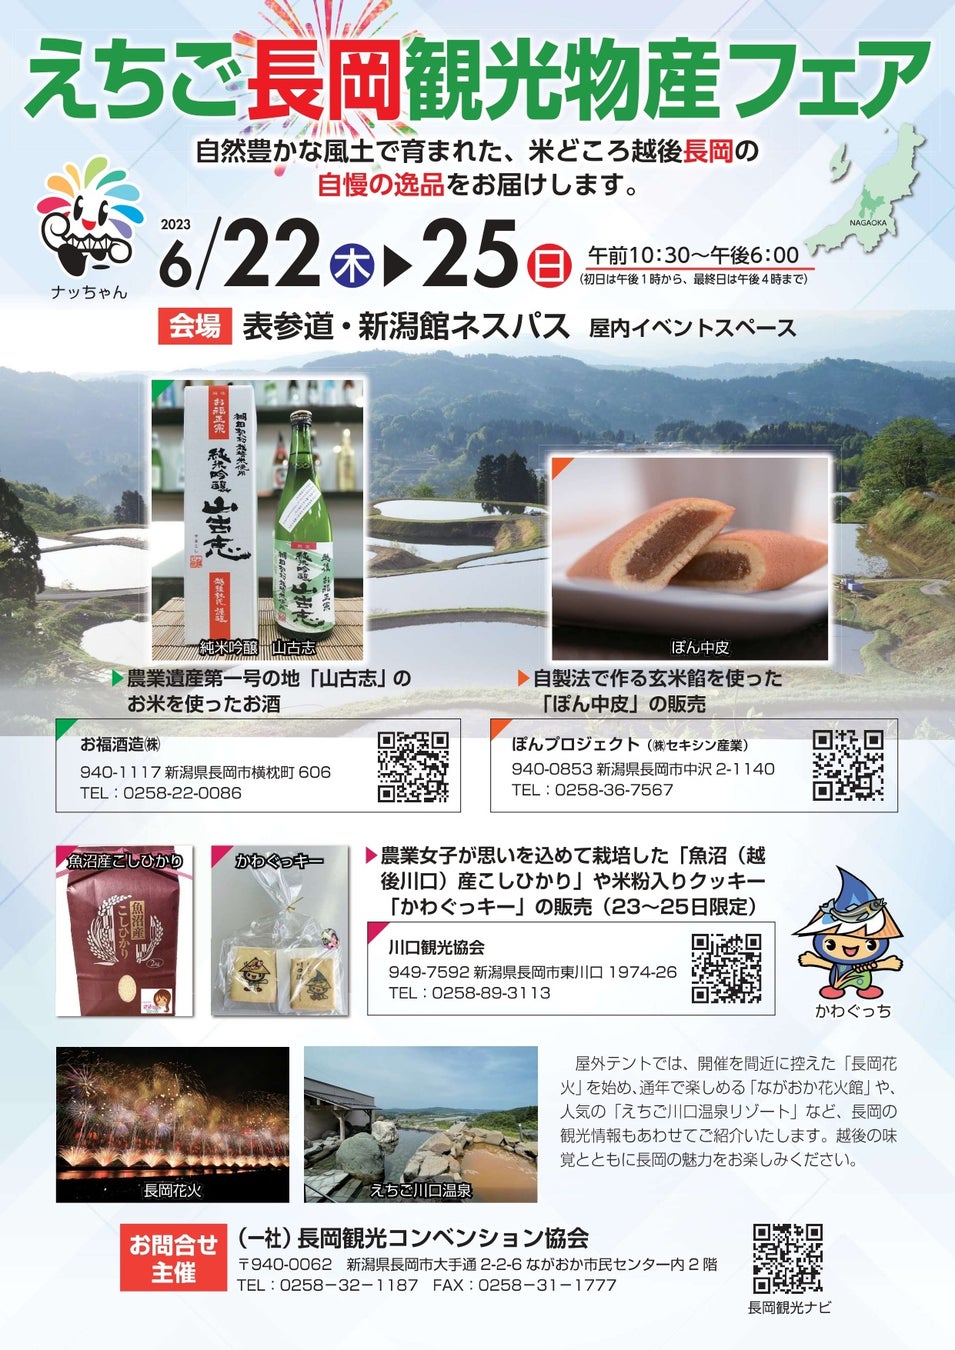 新潟県のアンテナショップ「表参道・新潟館ネスパス」で『えちご長岡観光物産フェア』を開催します